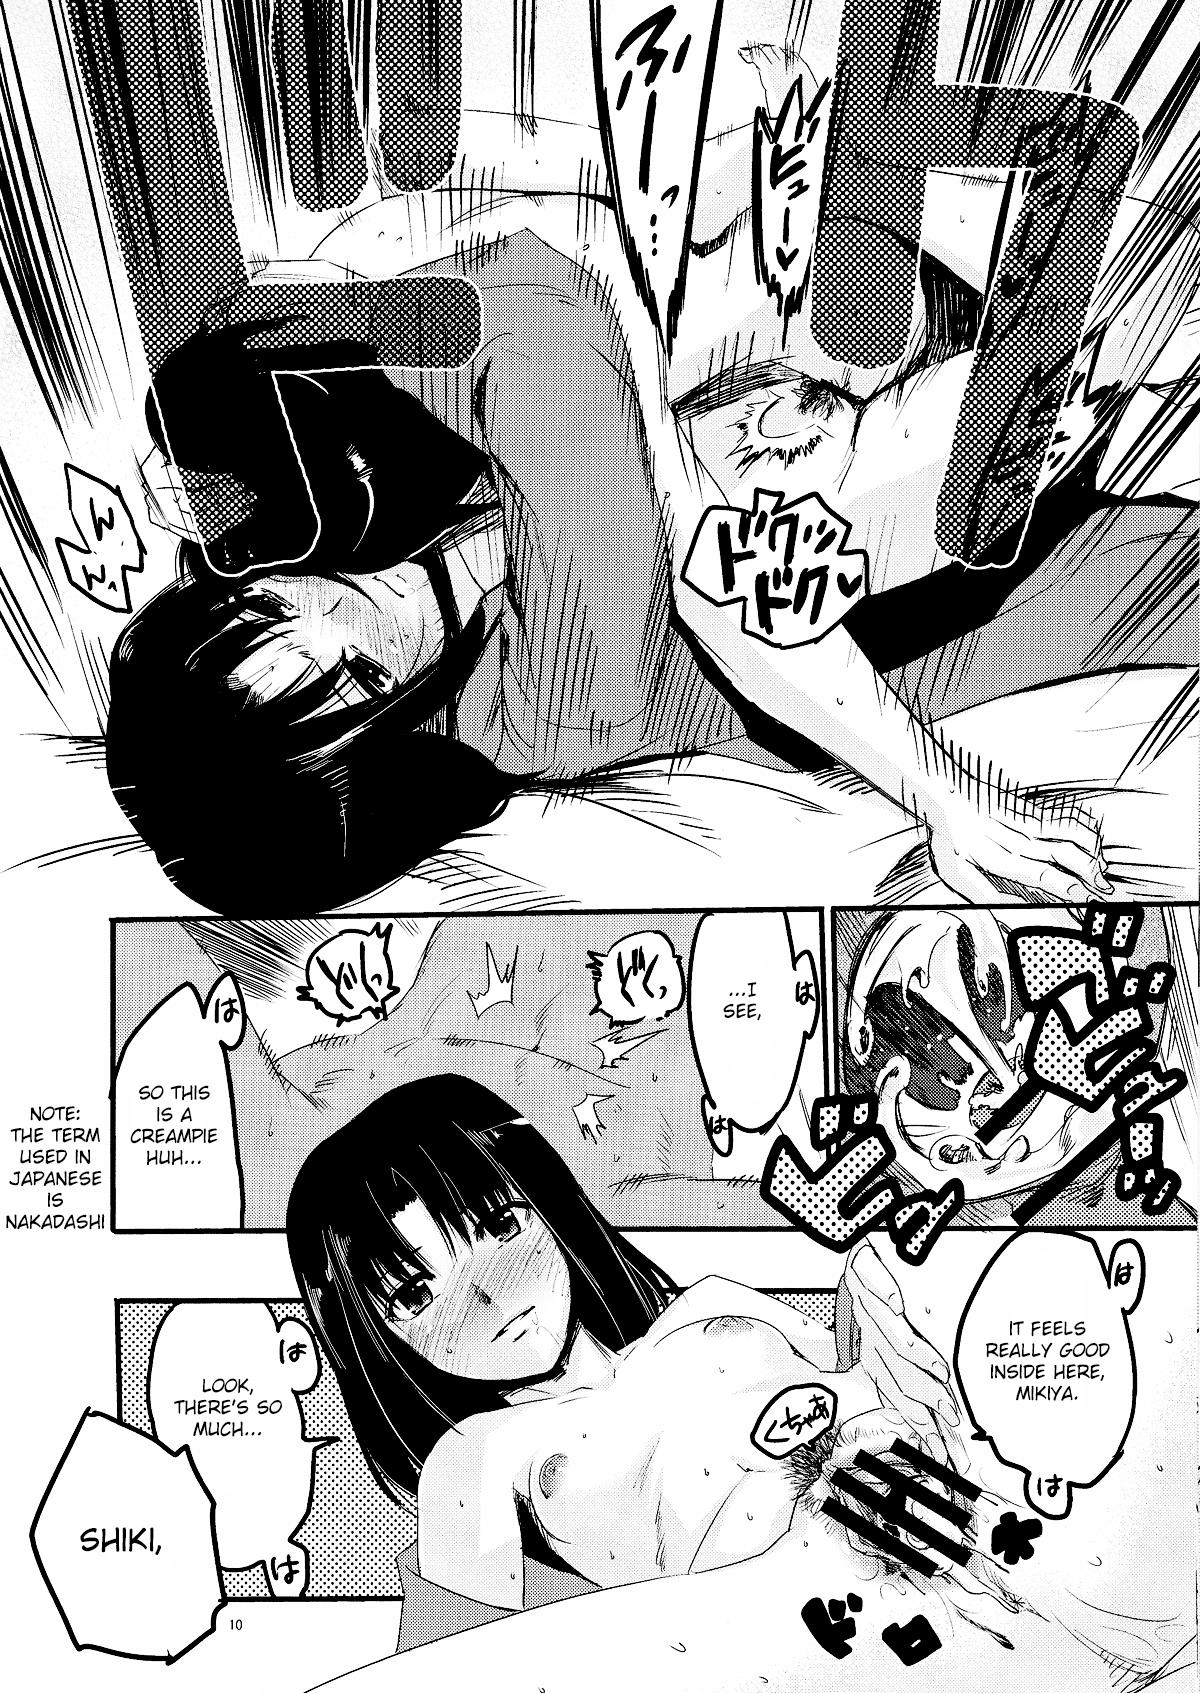 Dick Sucking Furimawasareru Hitotachi - Kara no kyoukai Load - Page 10